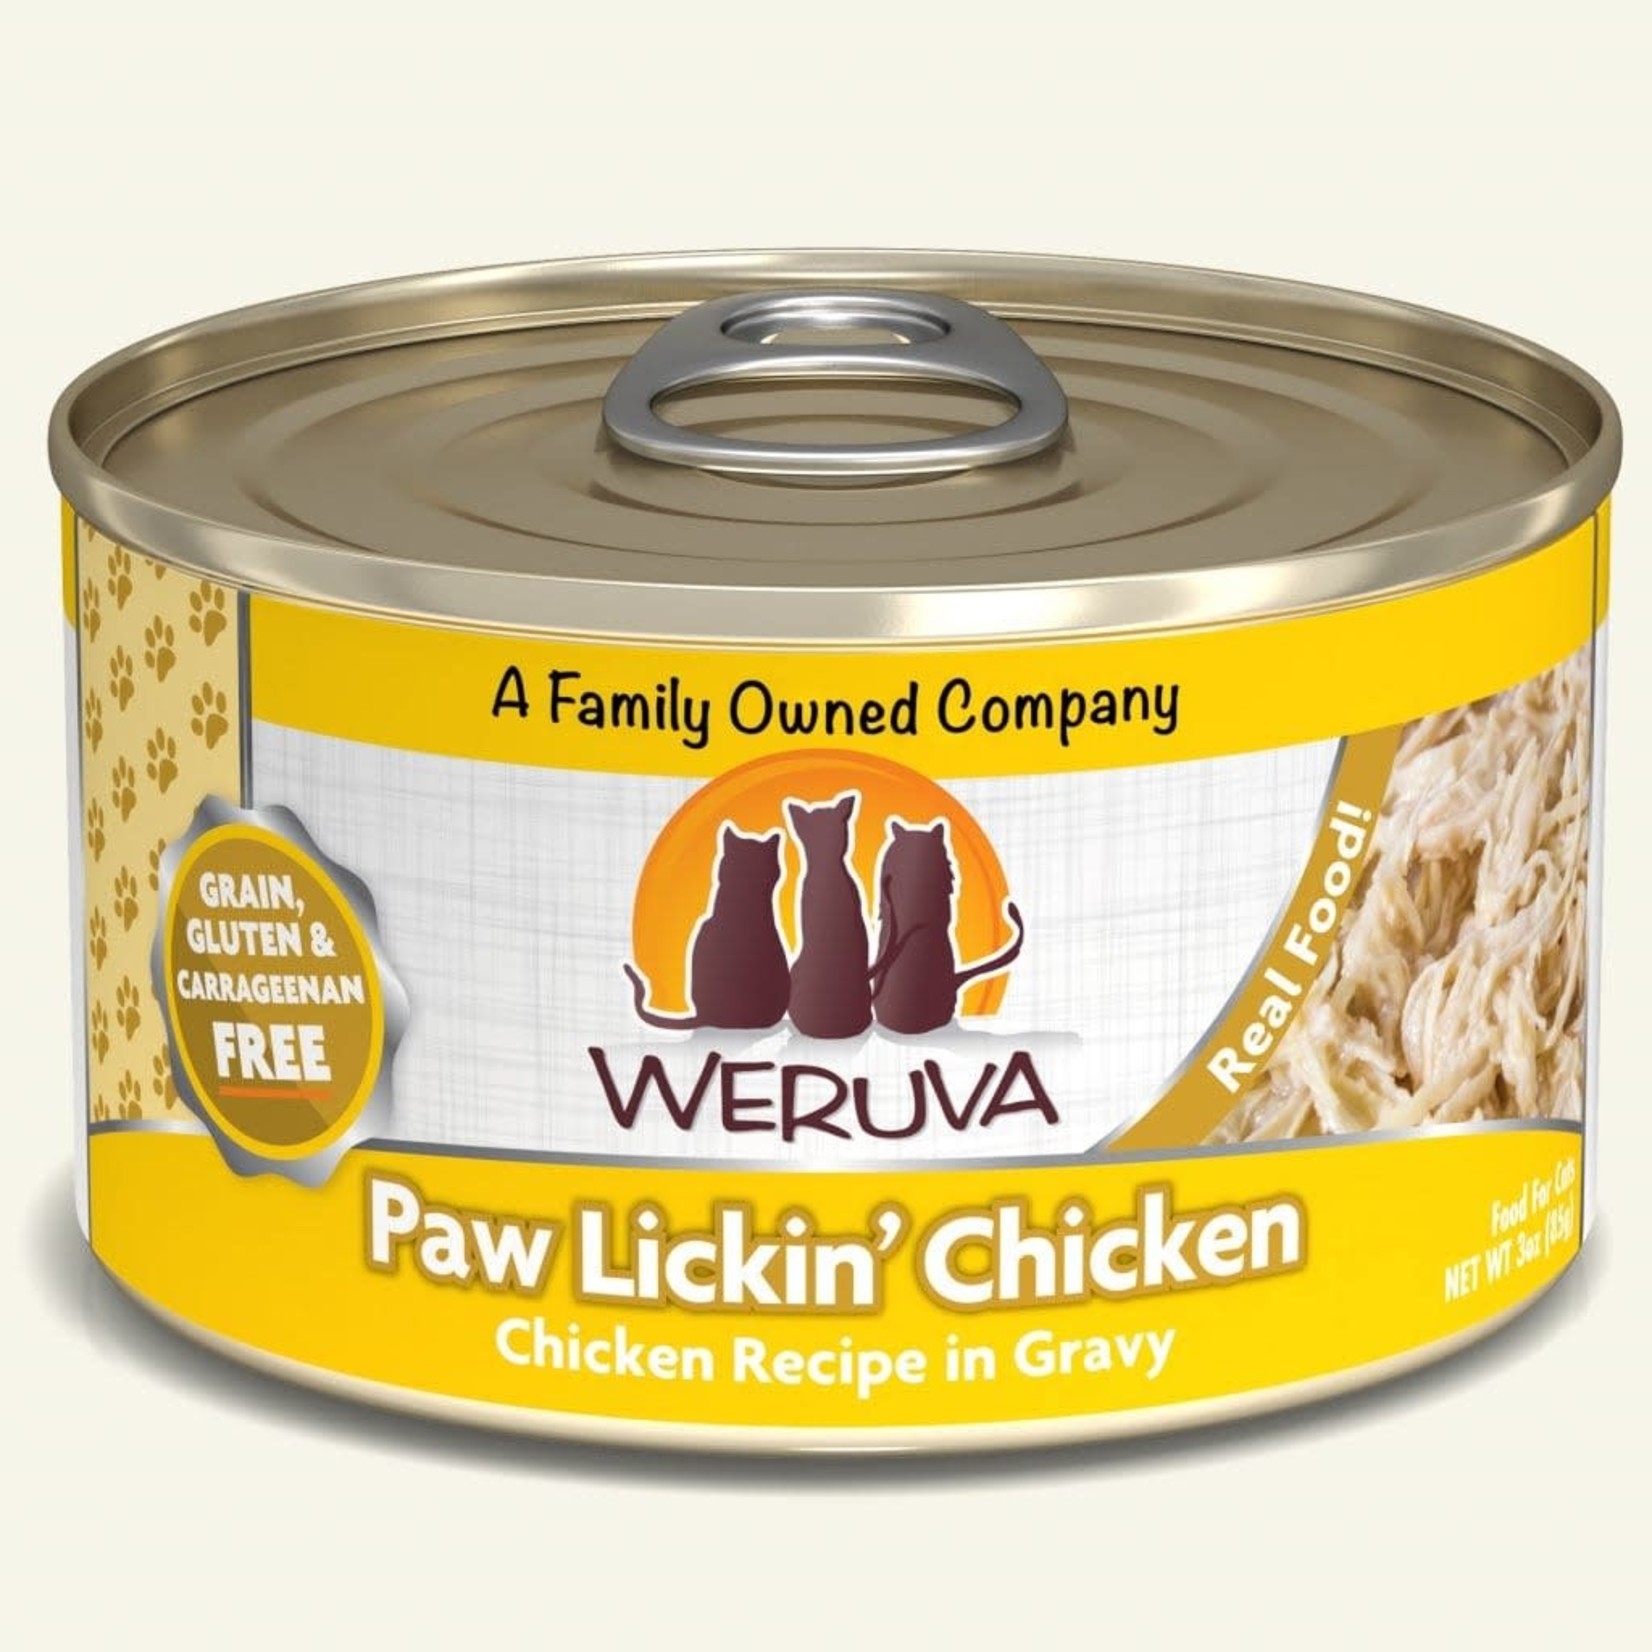 Weruva Paw Lickin' Chicken Recipe Cat Food 85g